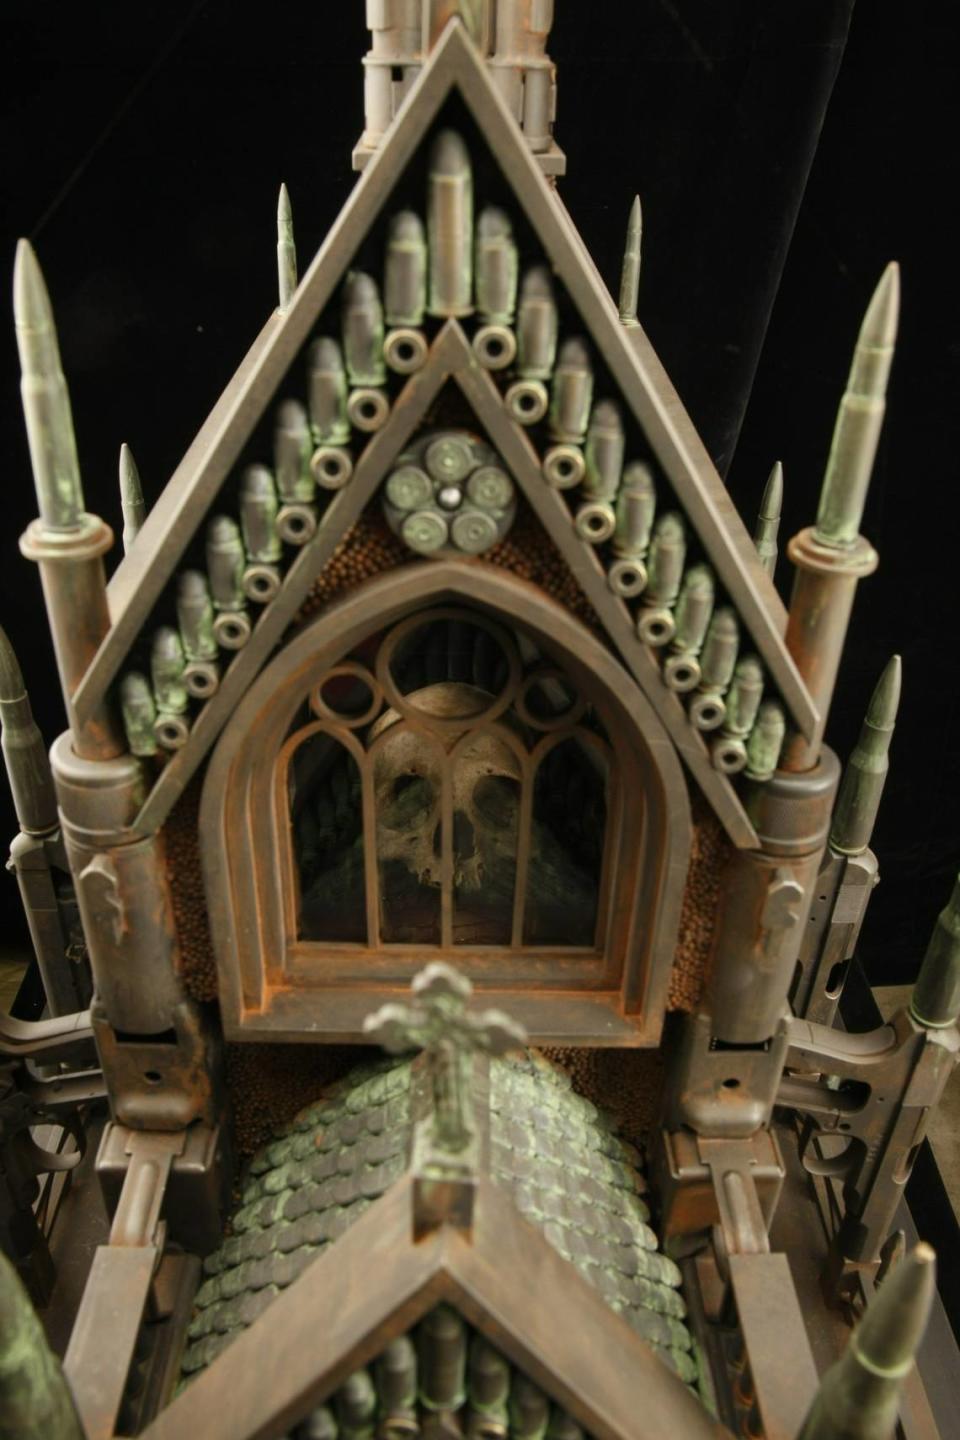 Un cráneo humano real en el interior de 'Gothic Mausoleum', una escultura del artista Al Farrow. La obra está hecha de balas, casquillos y pistolas reciclados.